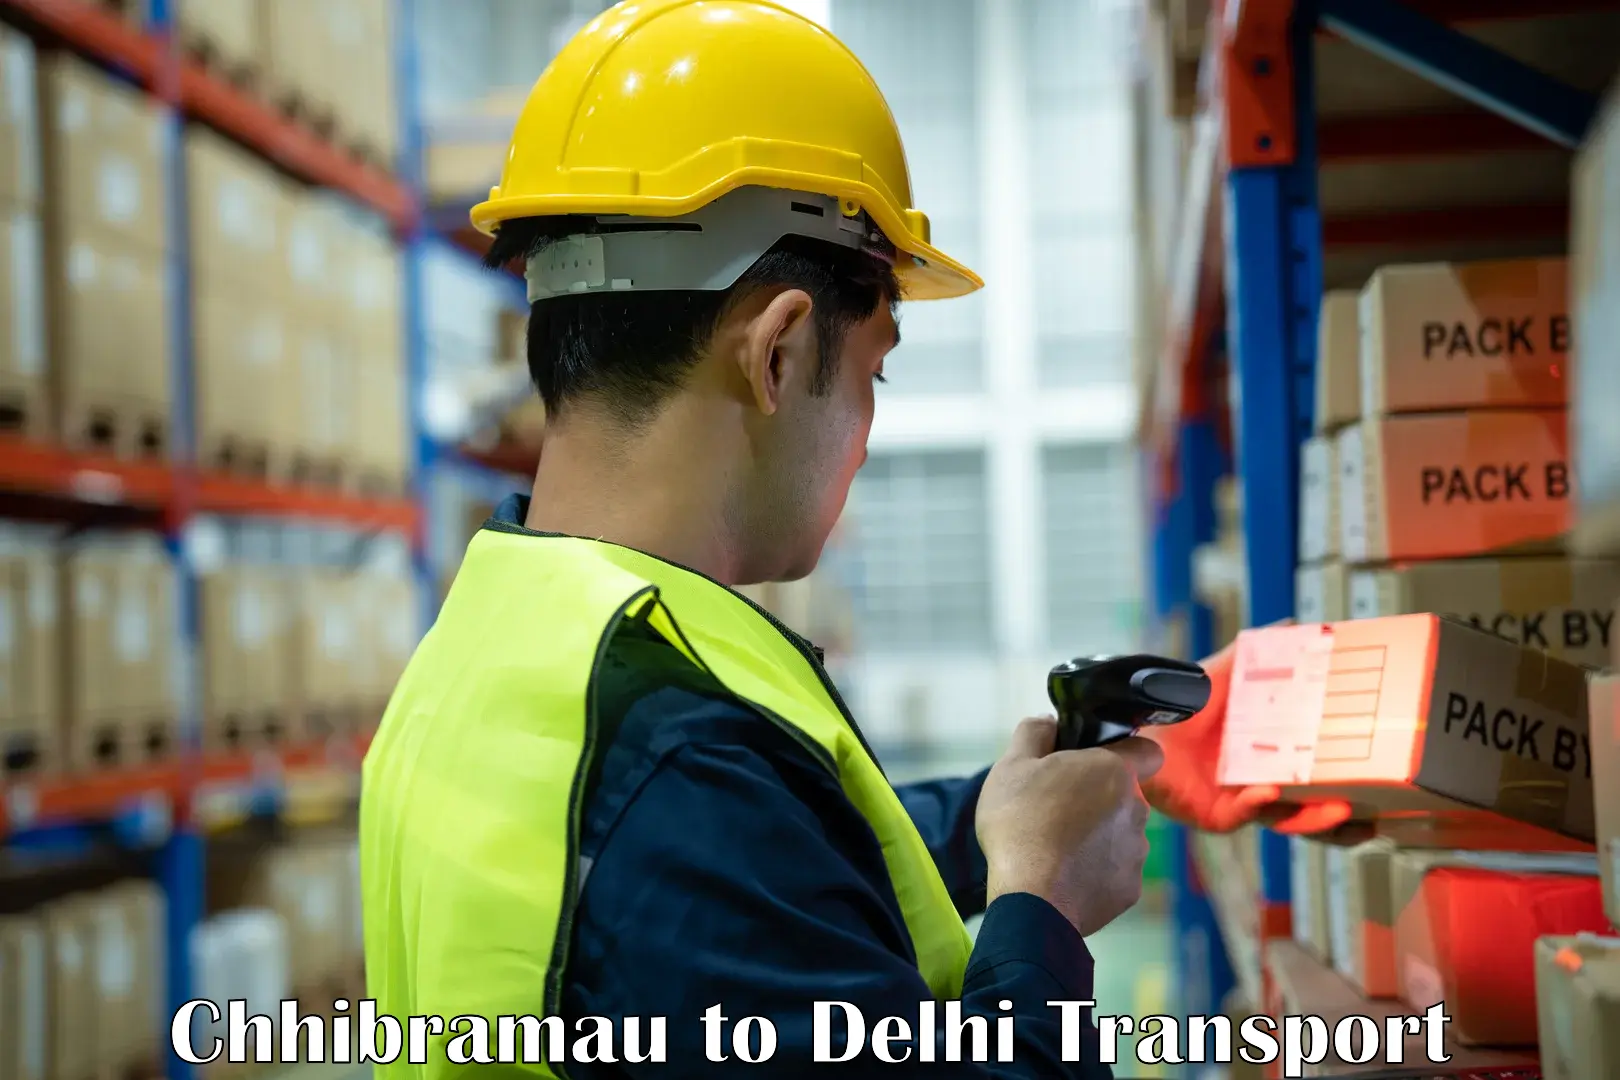 Furniture transport service in Chhibramau to Delhi